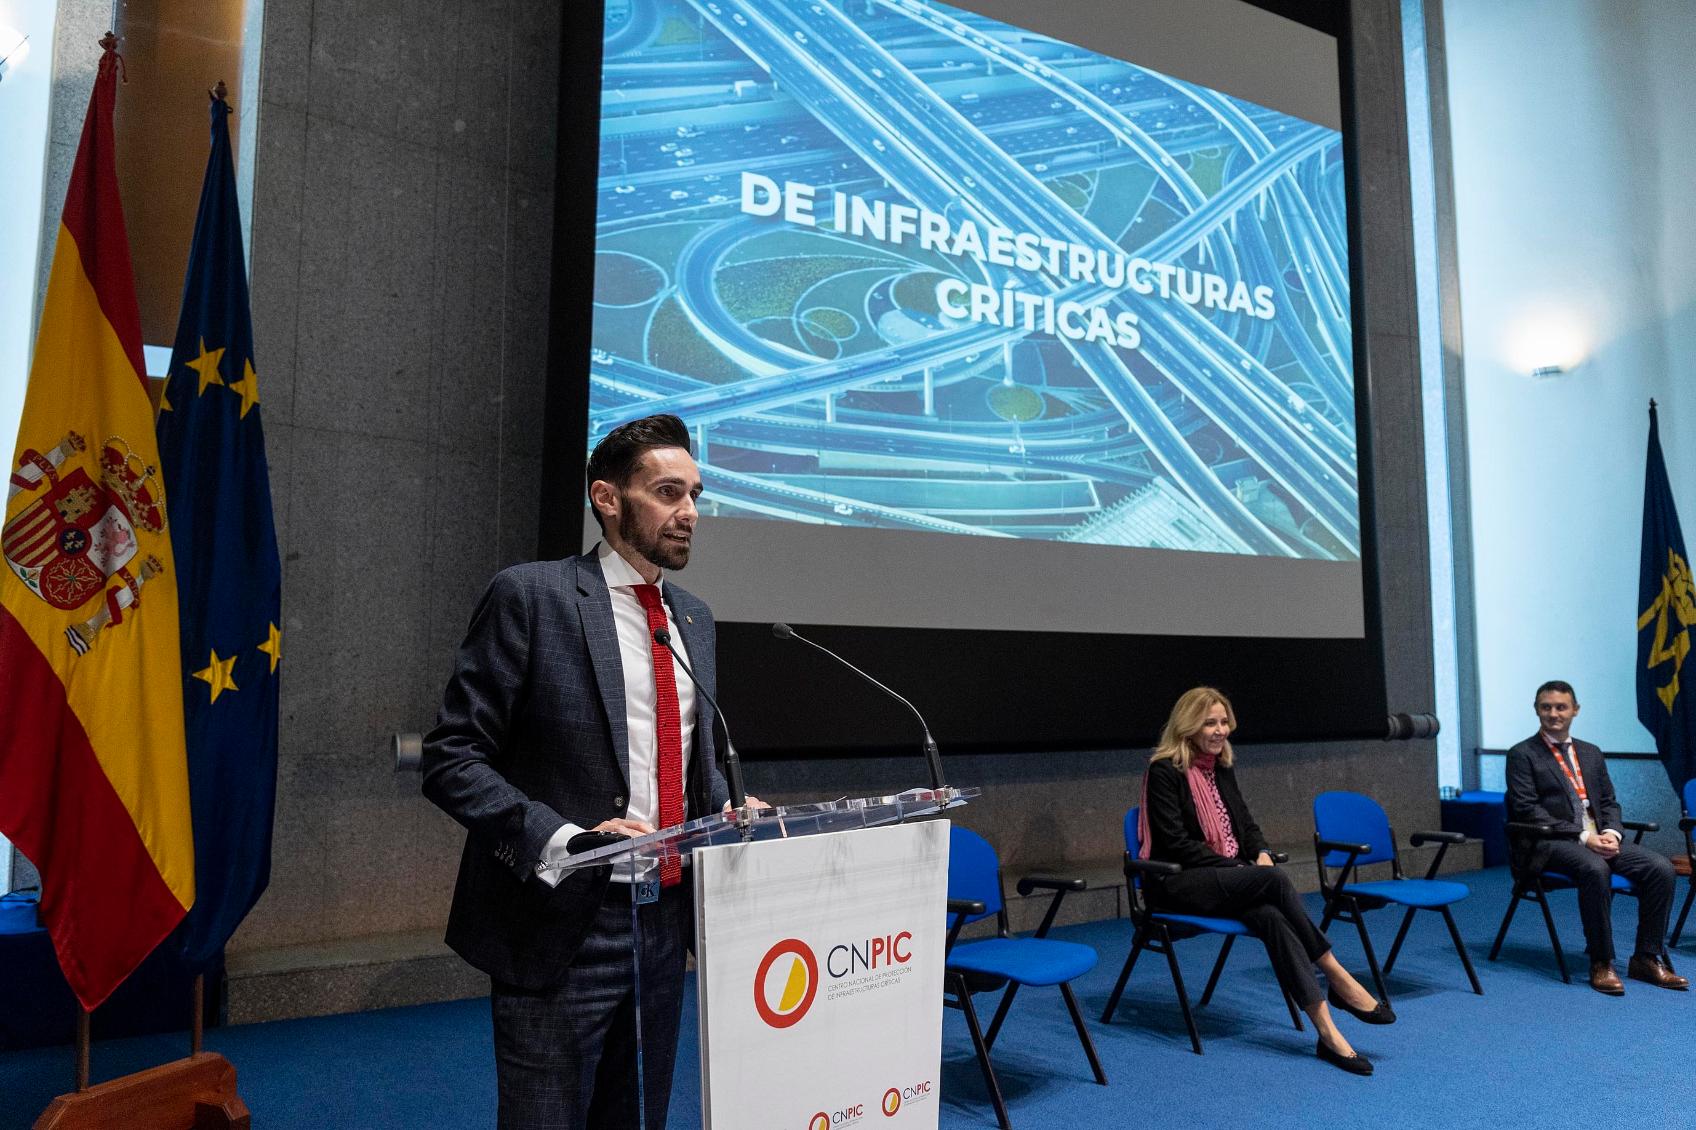 El secretario de Estado de Seguridad destaca “el liderazgo internacional” de España en la protección de infraestructuras críticas